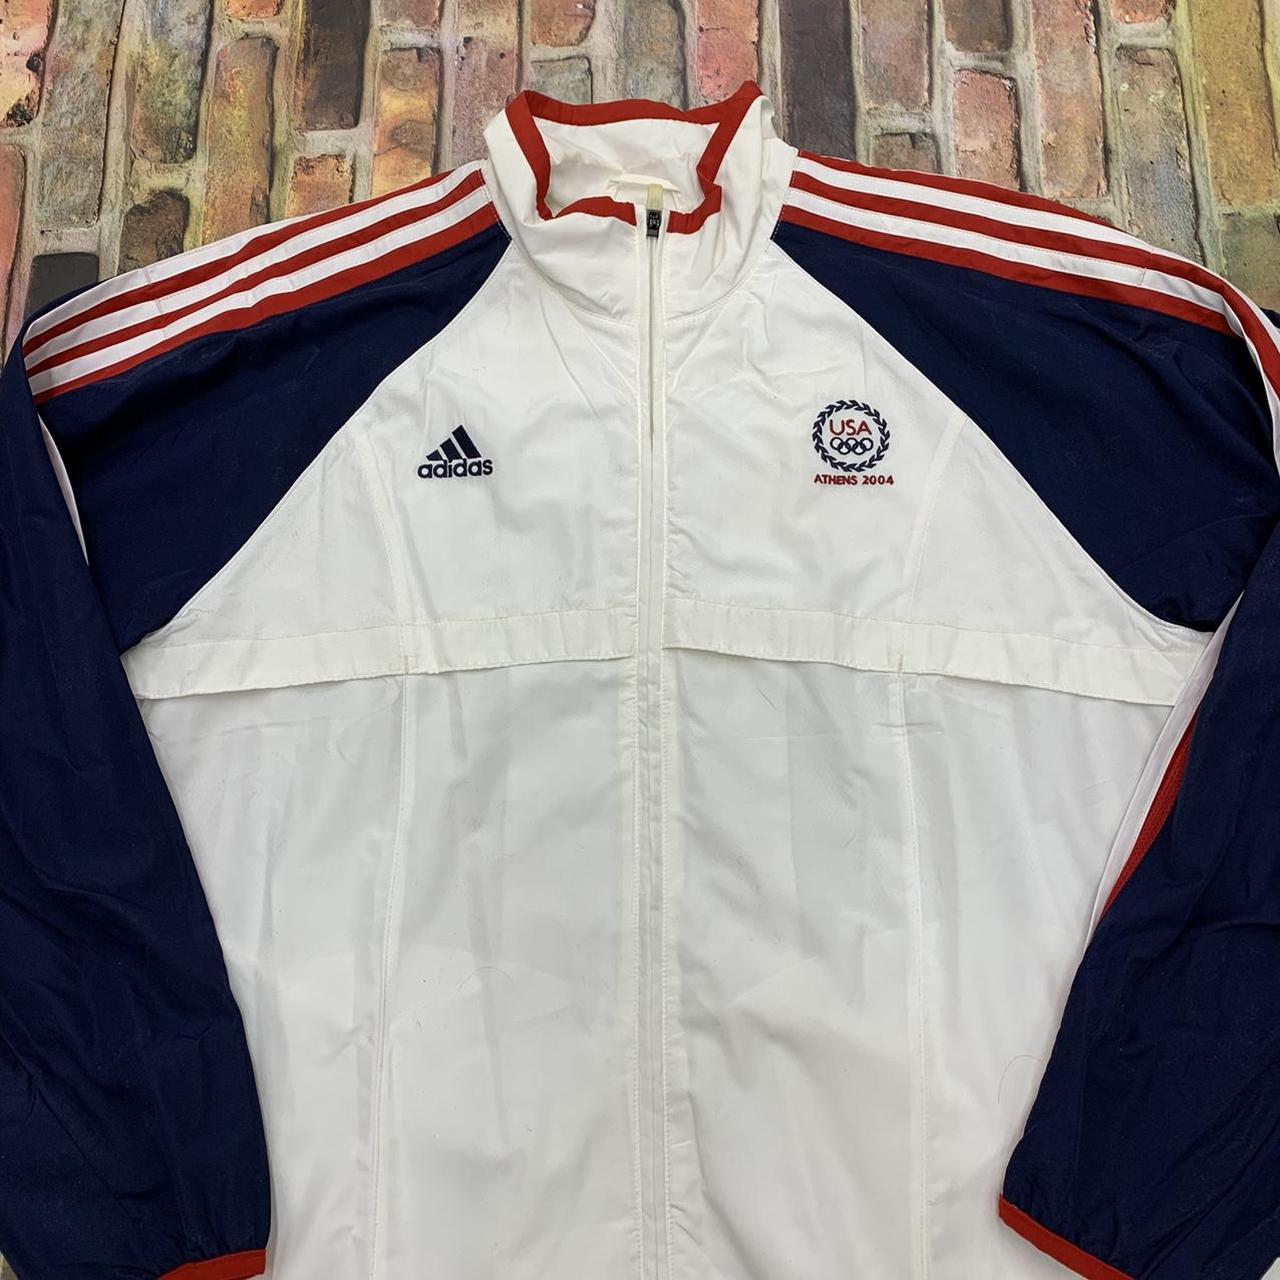 Vintage Adidas Team USA Athens Olympics jacket... - Depop